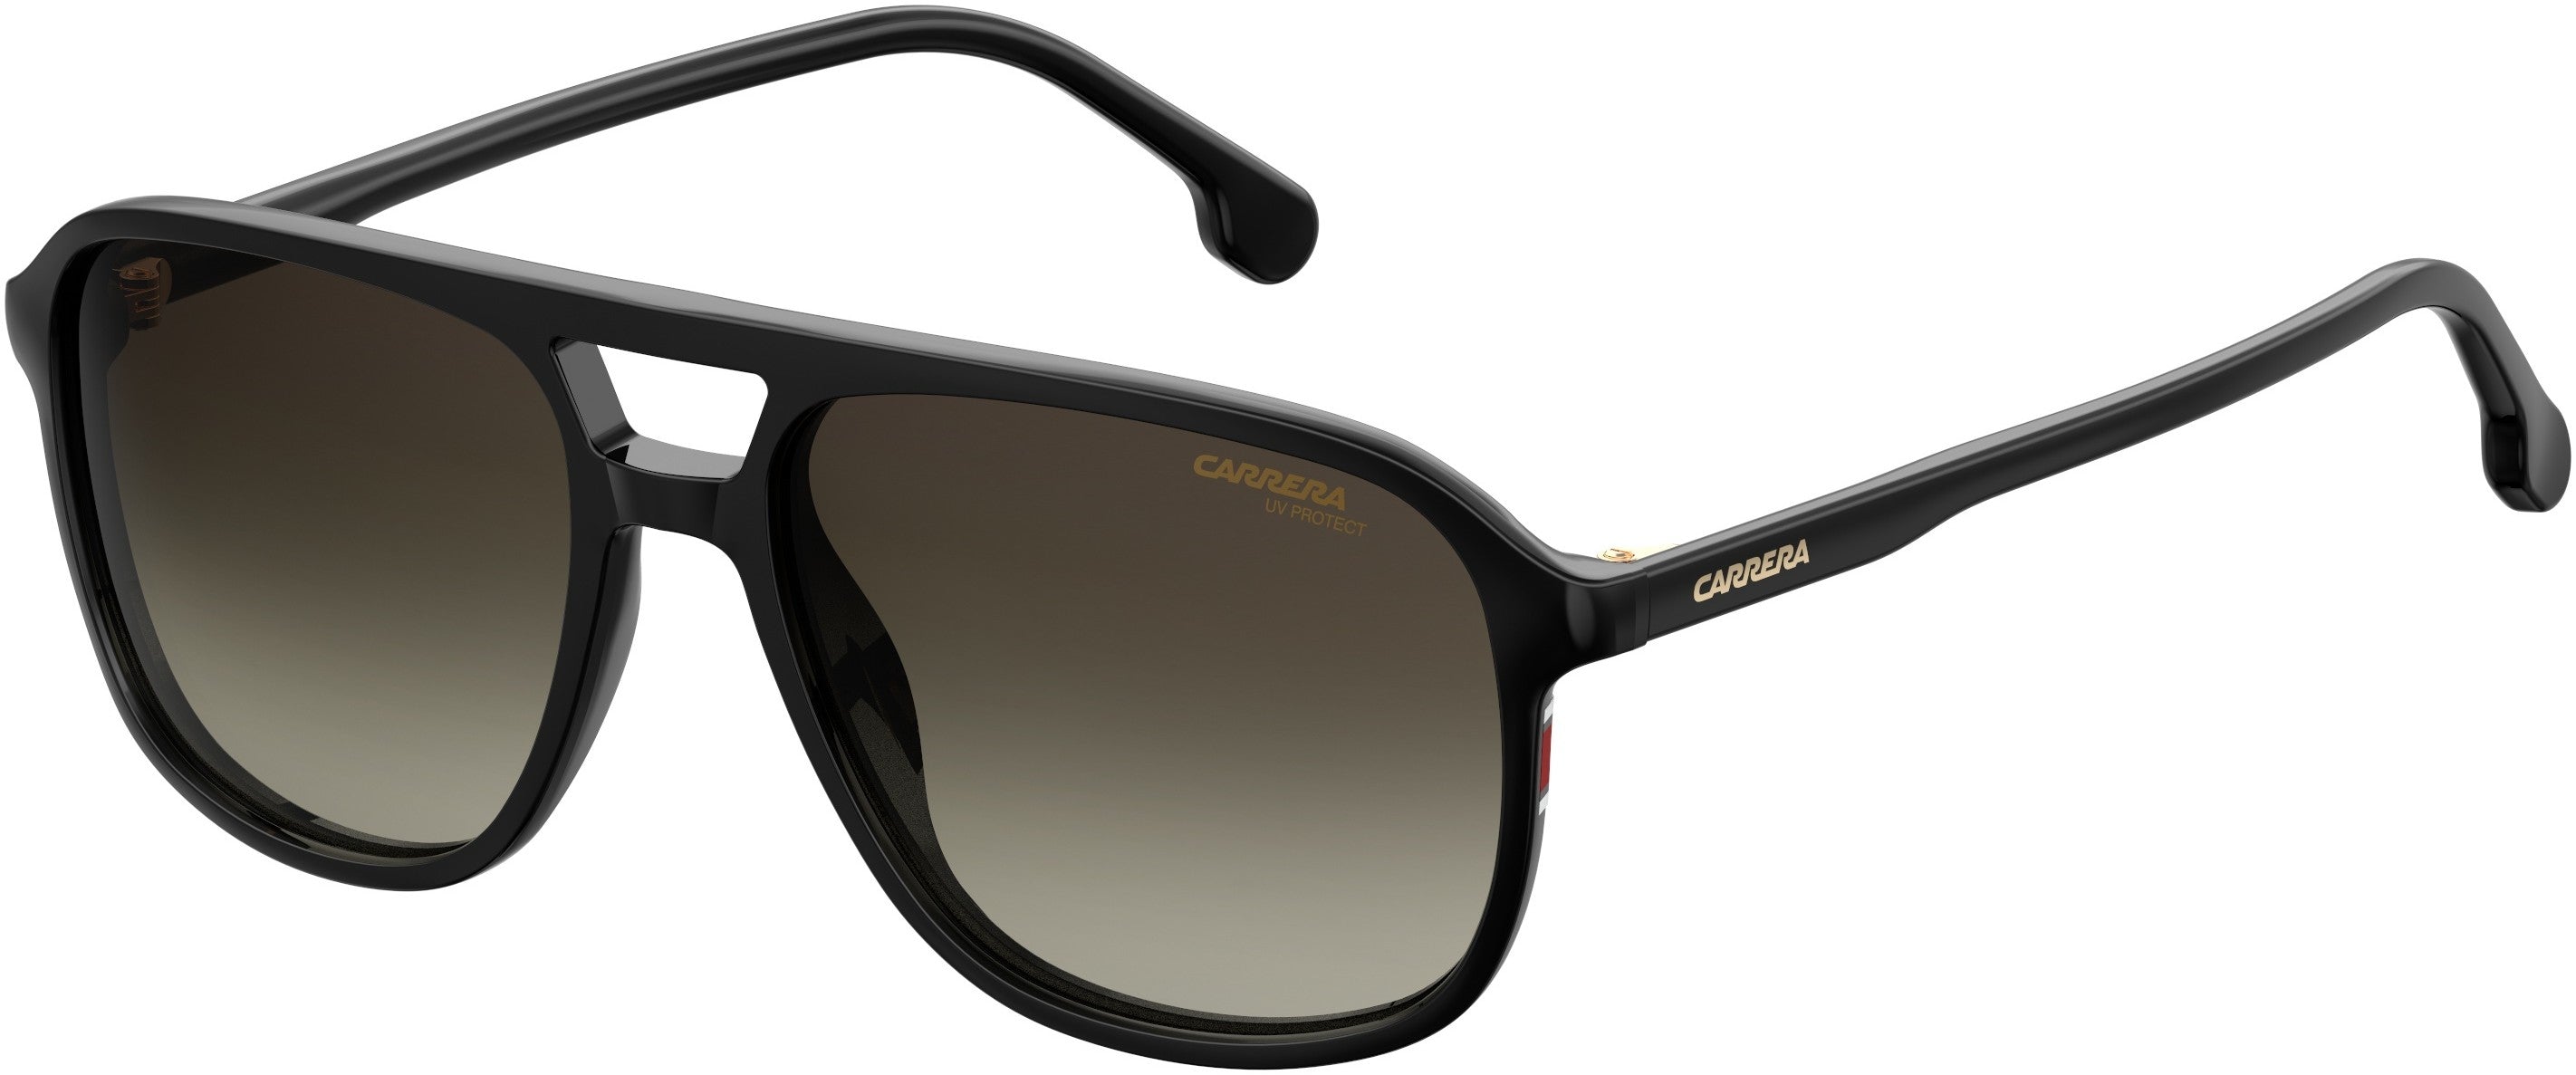  Carrera 173/S Navigator Sunglasses 0807-0807  Black (HA Brown Gradient)